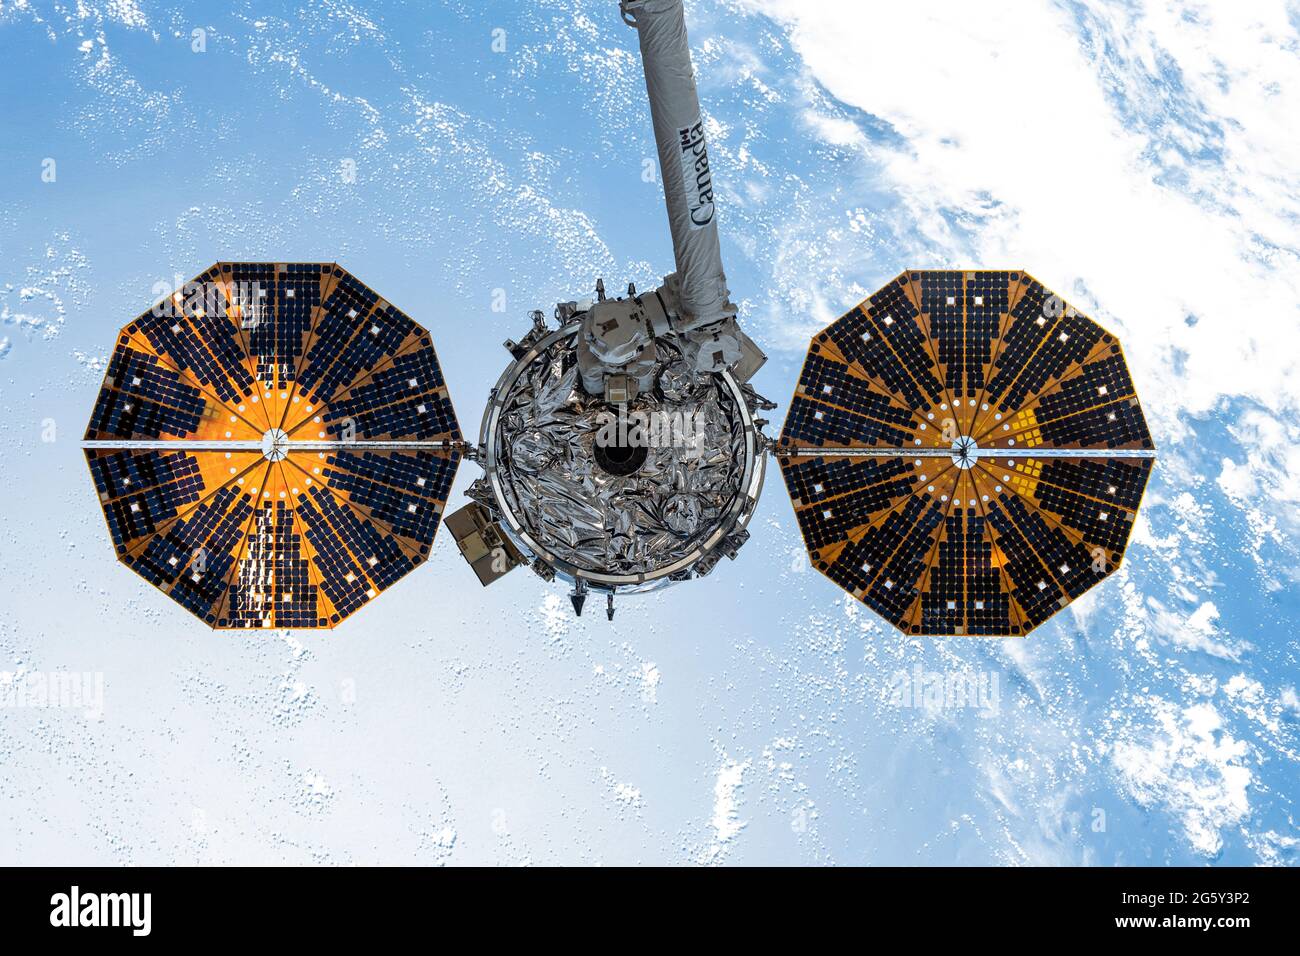 La navicella spaziale Northrop Grumman Cygnus è affrontata dalla CanadaArm2 Moments prima di essere rilasciata dalla Stazione spaziale Internazionale seguire una missione di carico di quattro mesi 29 giugno 2020 in Earth Orbit. Foto Stock